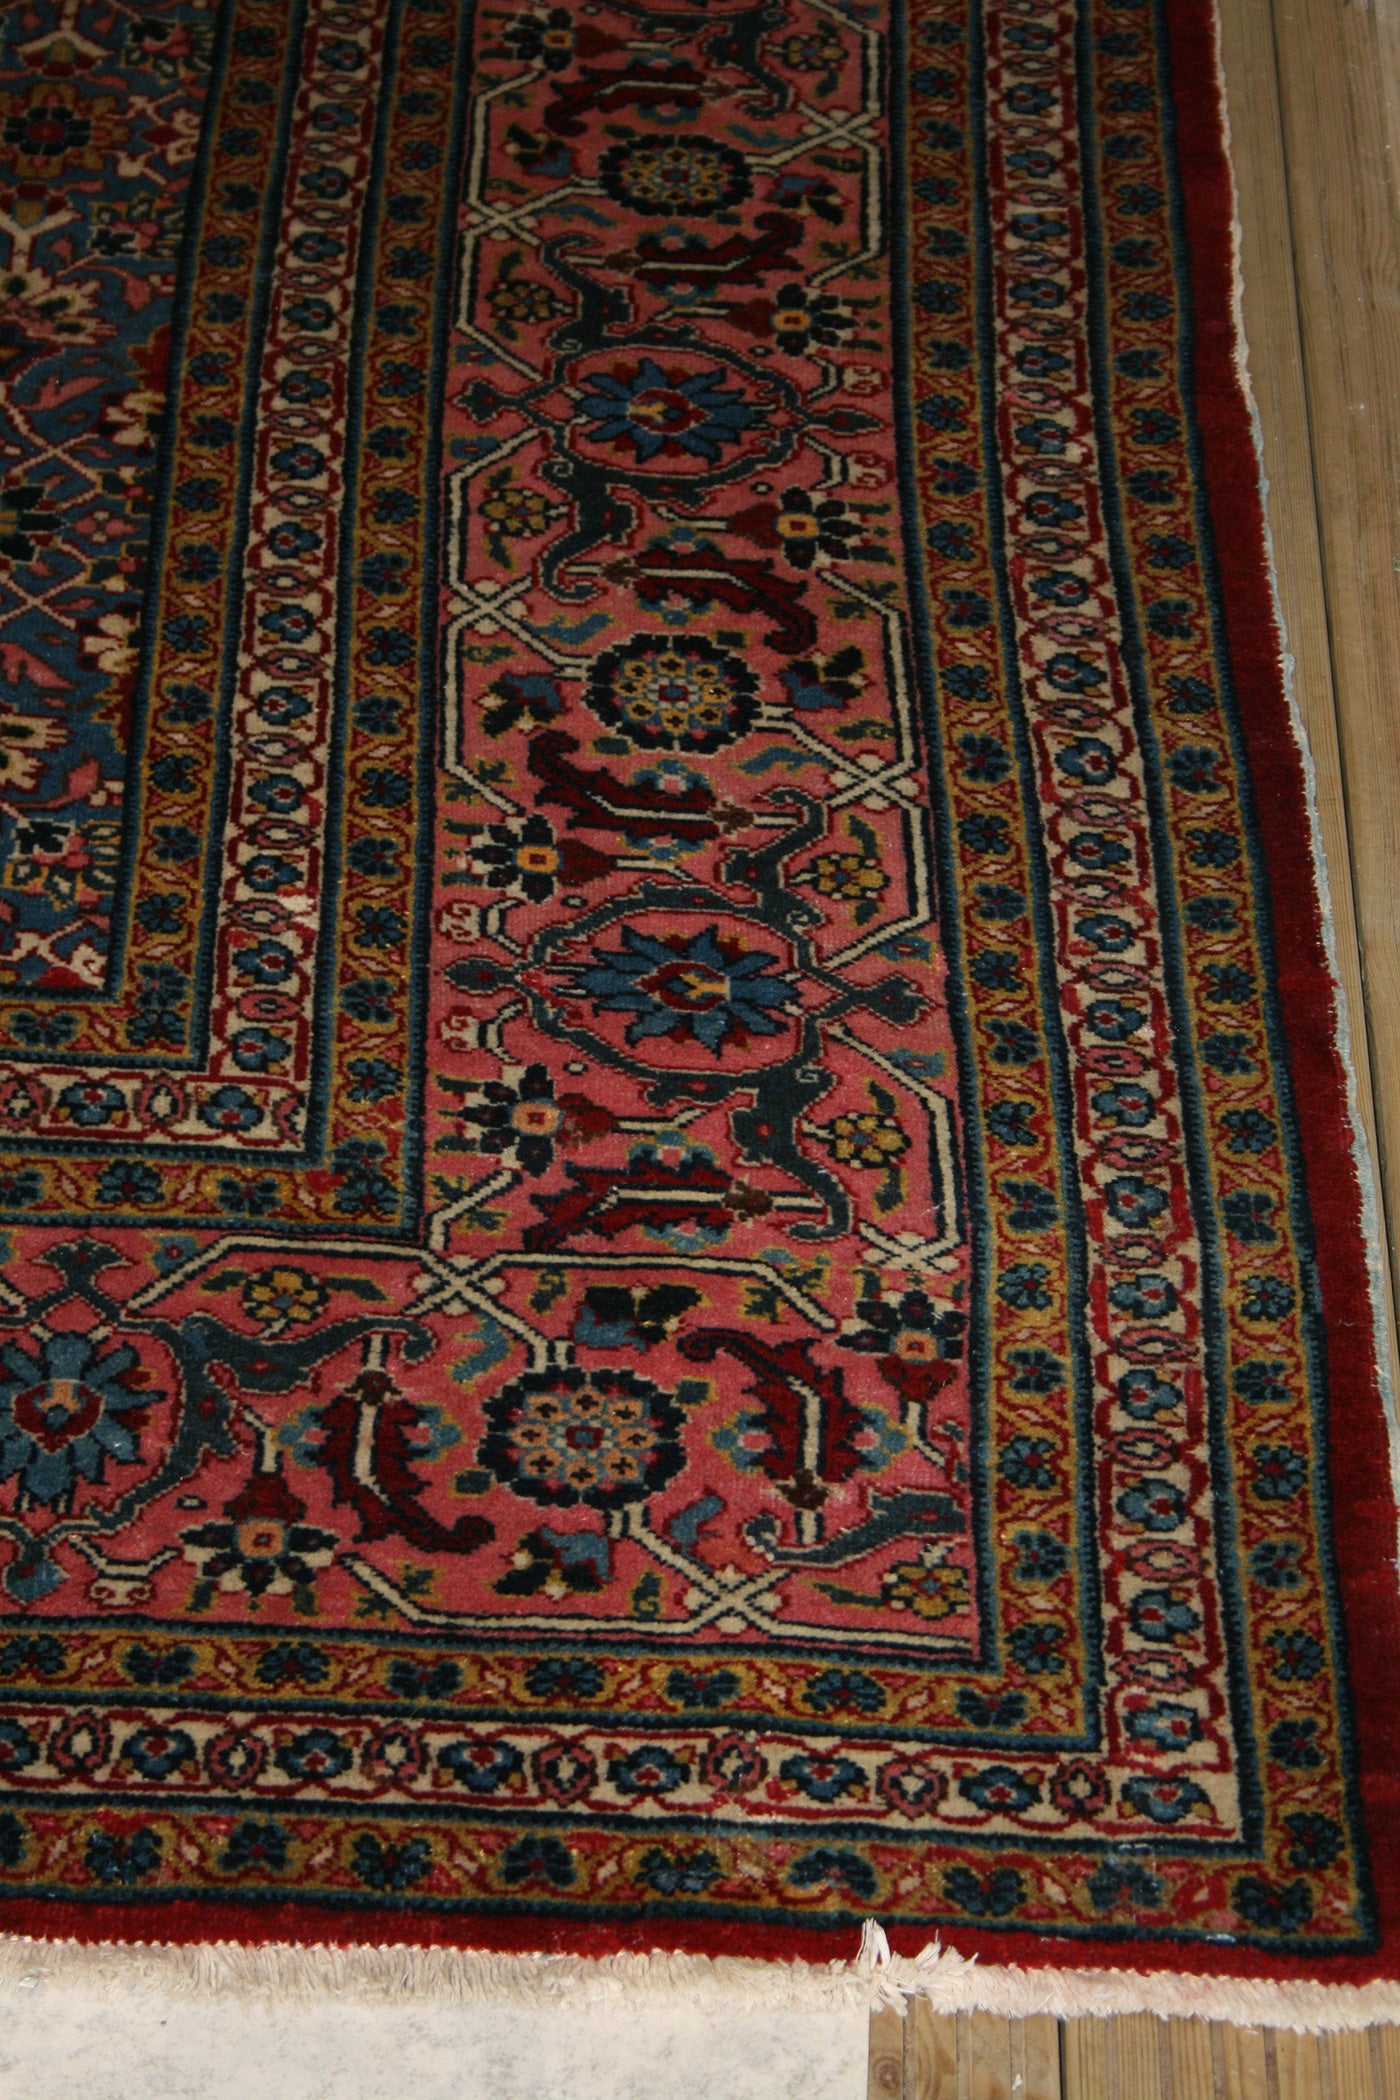 Antique Persian Tabriz Rug